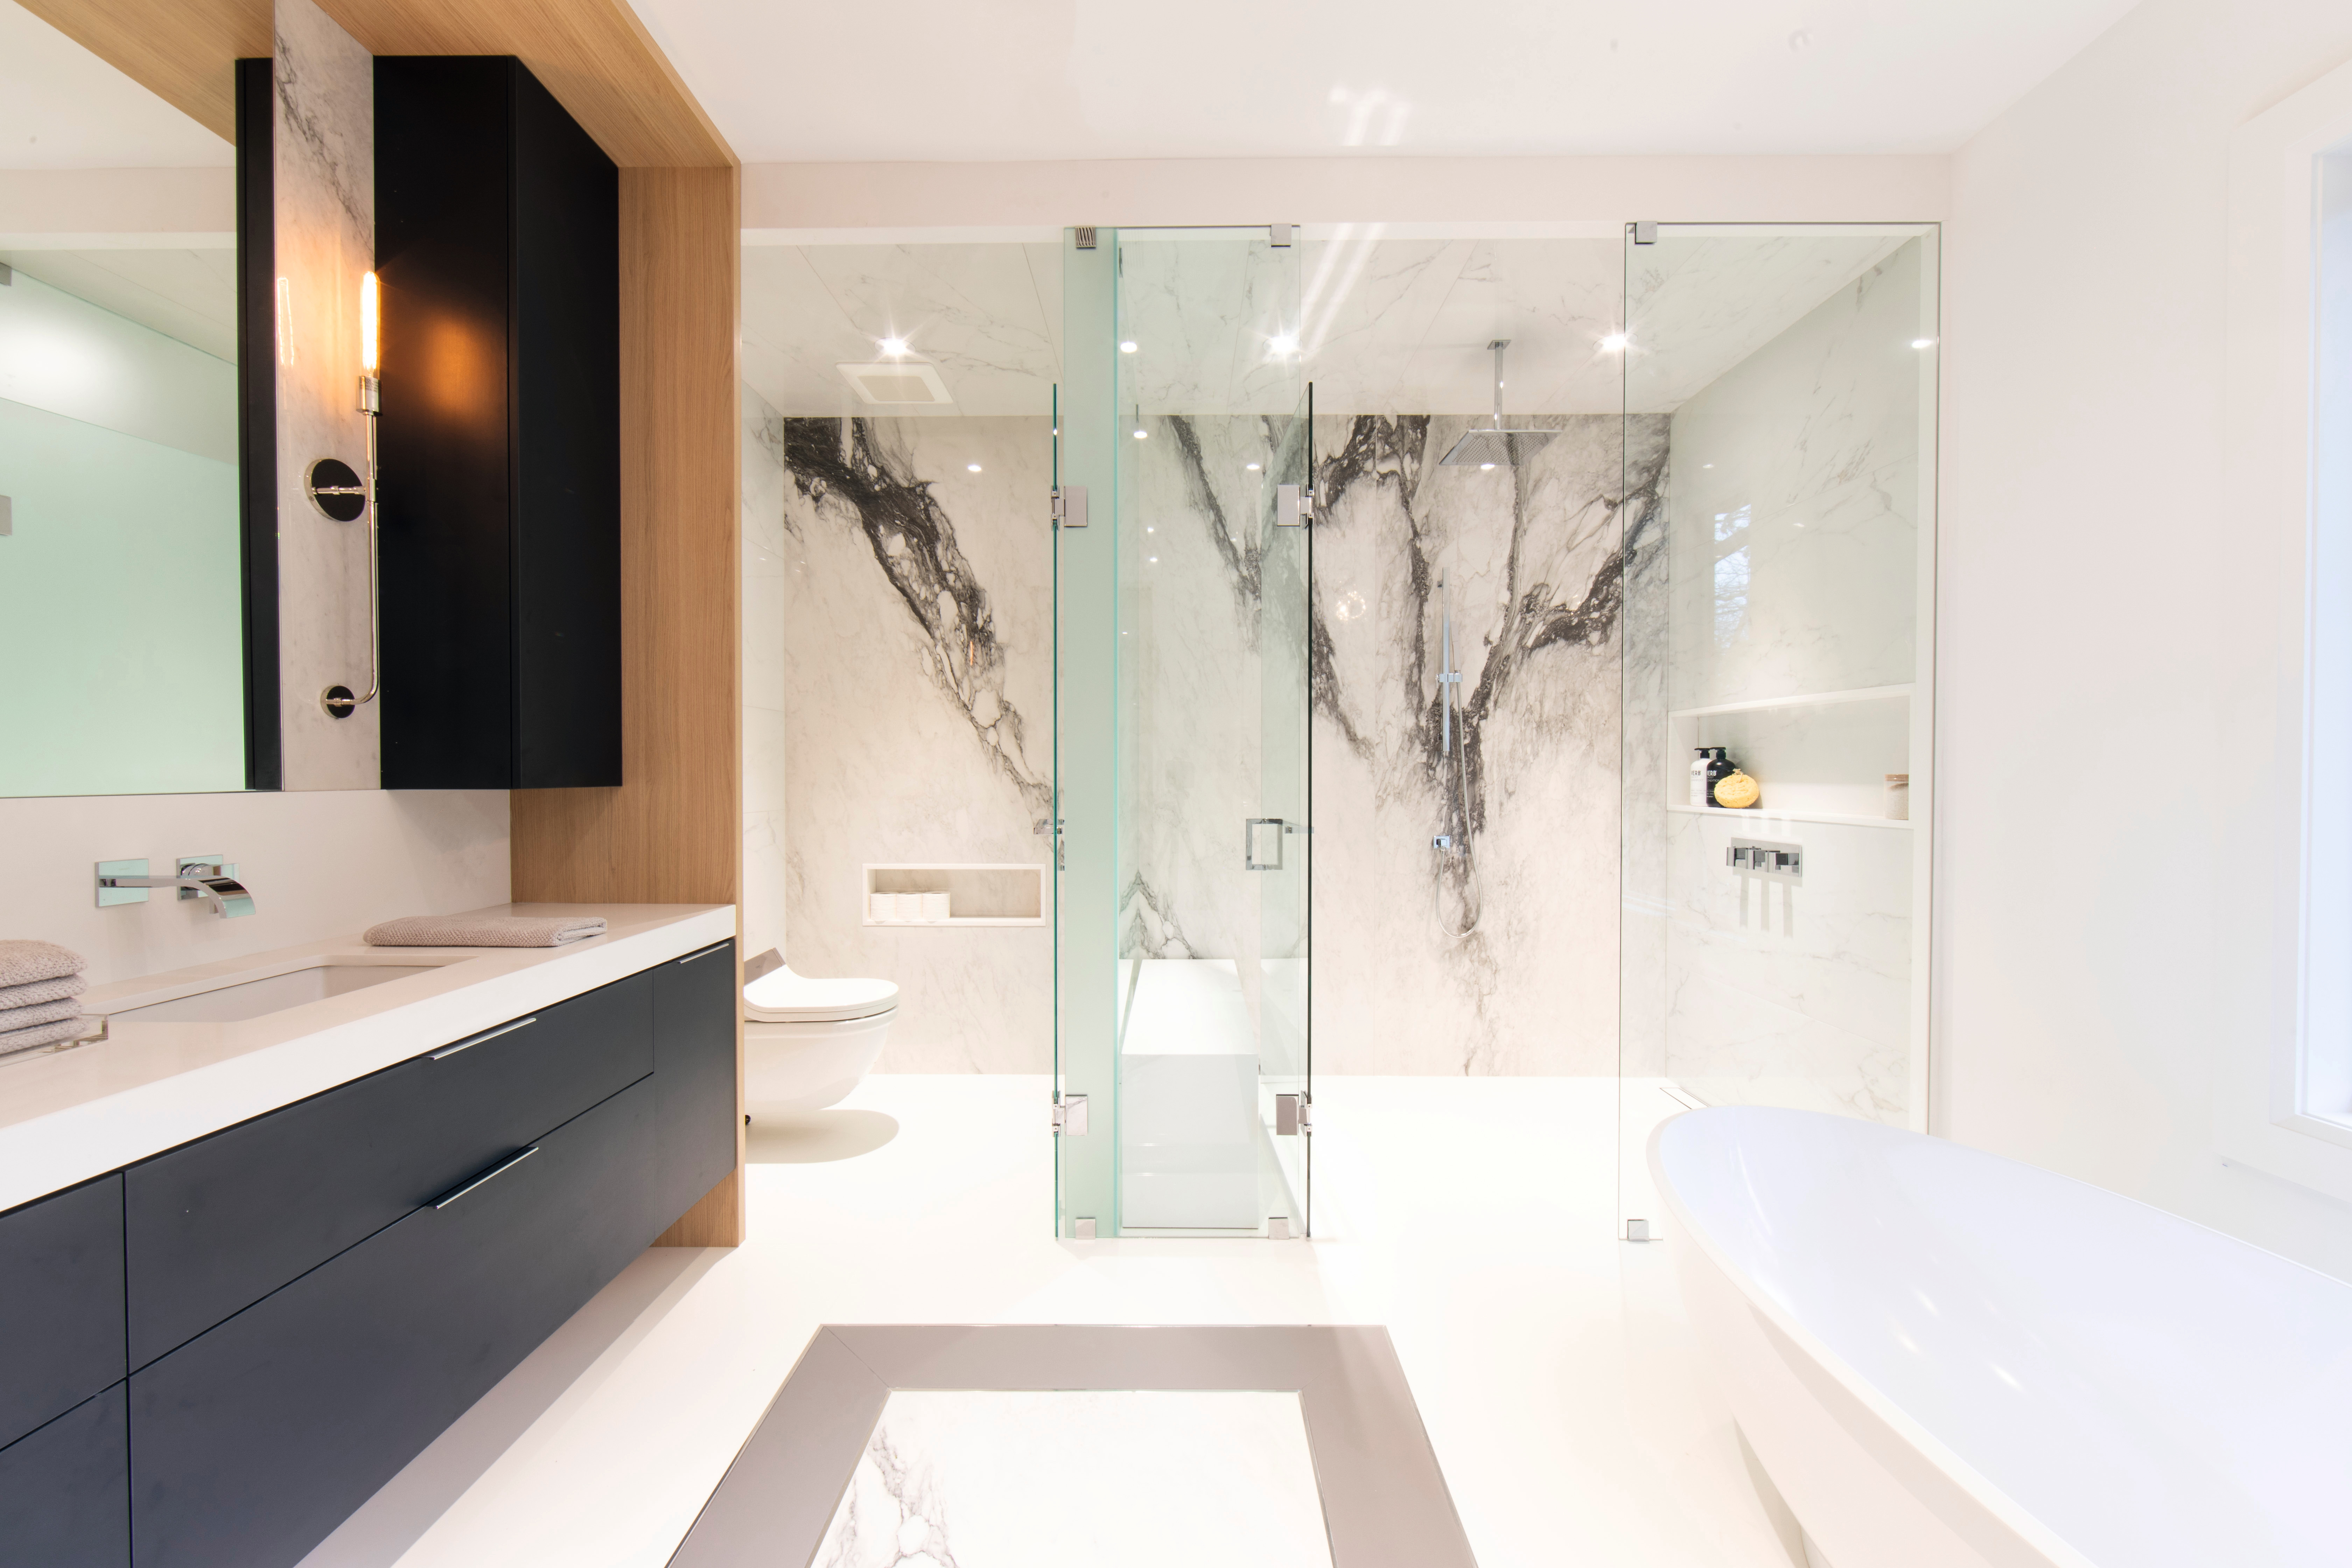 Zwarte accenten gecombineerd met een lichte natuurlijke houtuitstraling en elegant marmer transformeren de badkamer in een oase van welzijn.